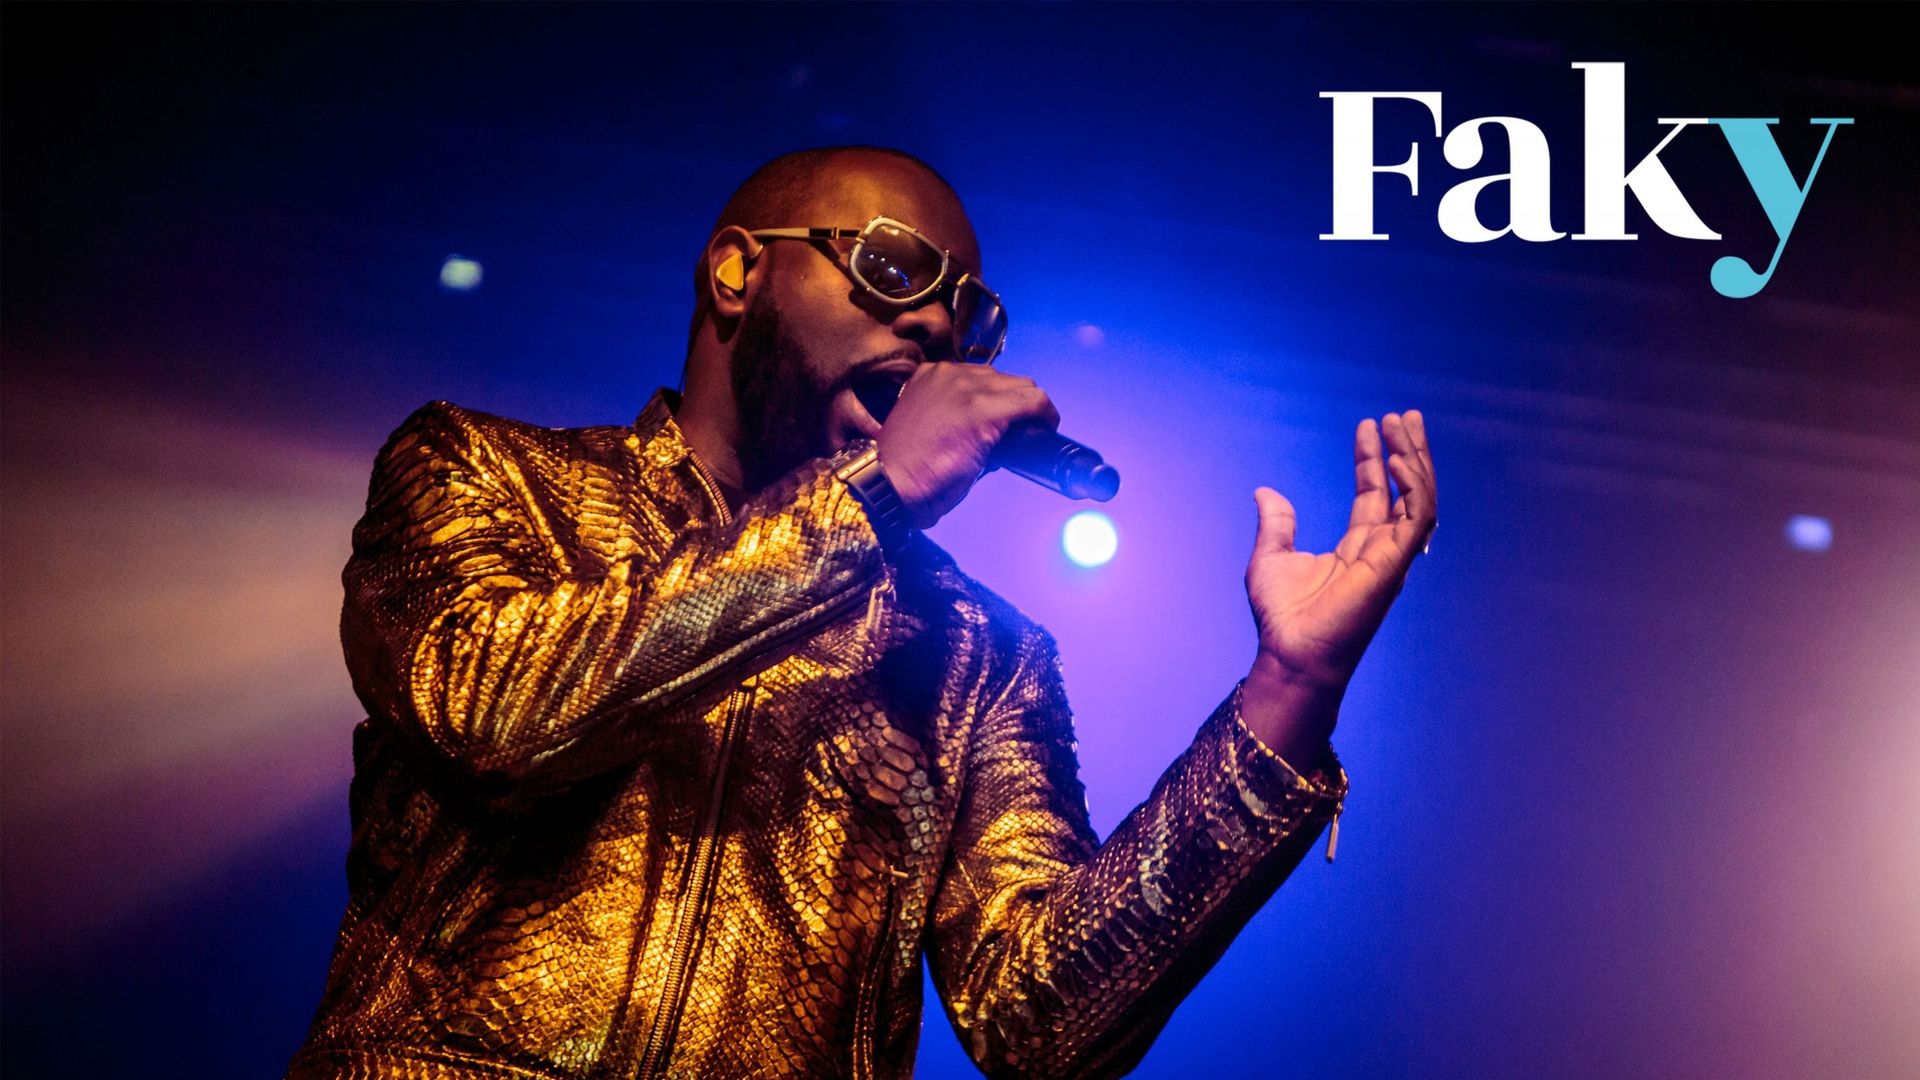 Le rappeur et chanteur français d’origine congolaise Gandhi Djun, plus connu sous son nom de scène Gims, se produit en direct à la Fabrique le 10 mai 2016 à Milan, en Italie.